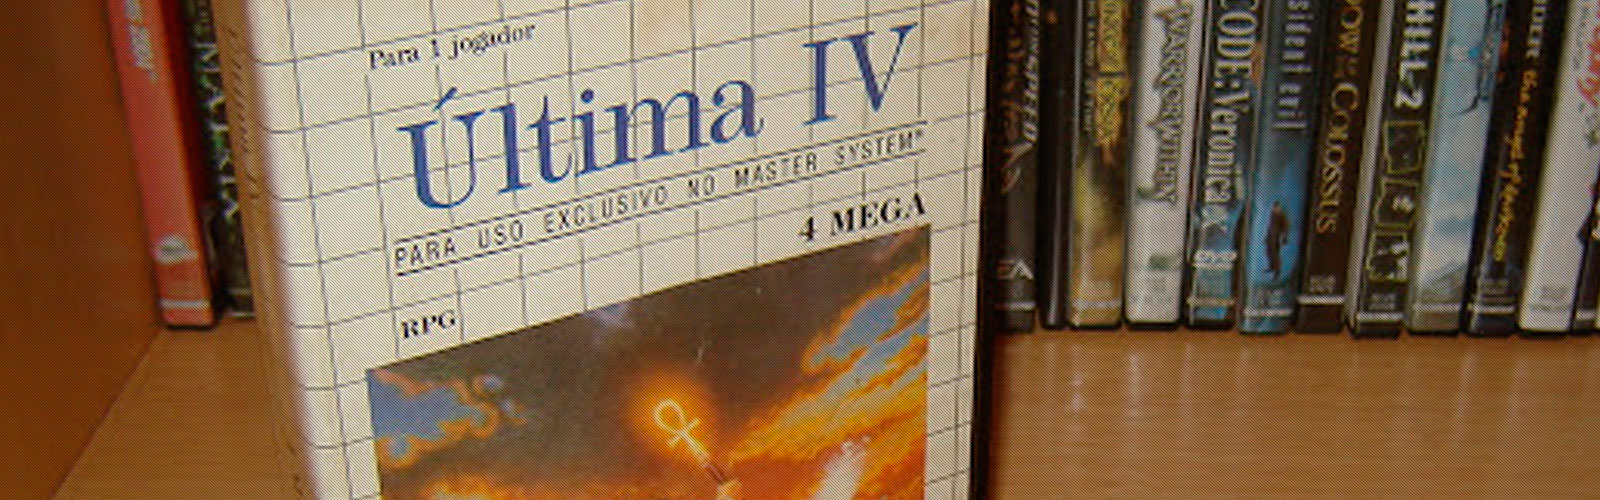 Aquisição - Última IV (Master System) Cover